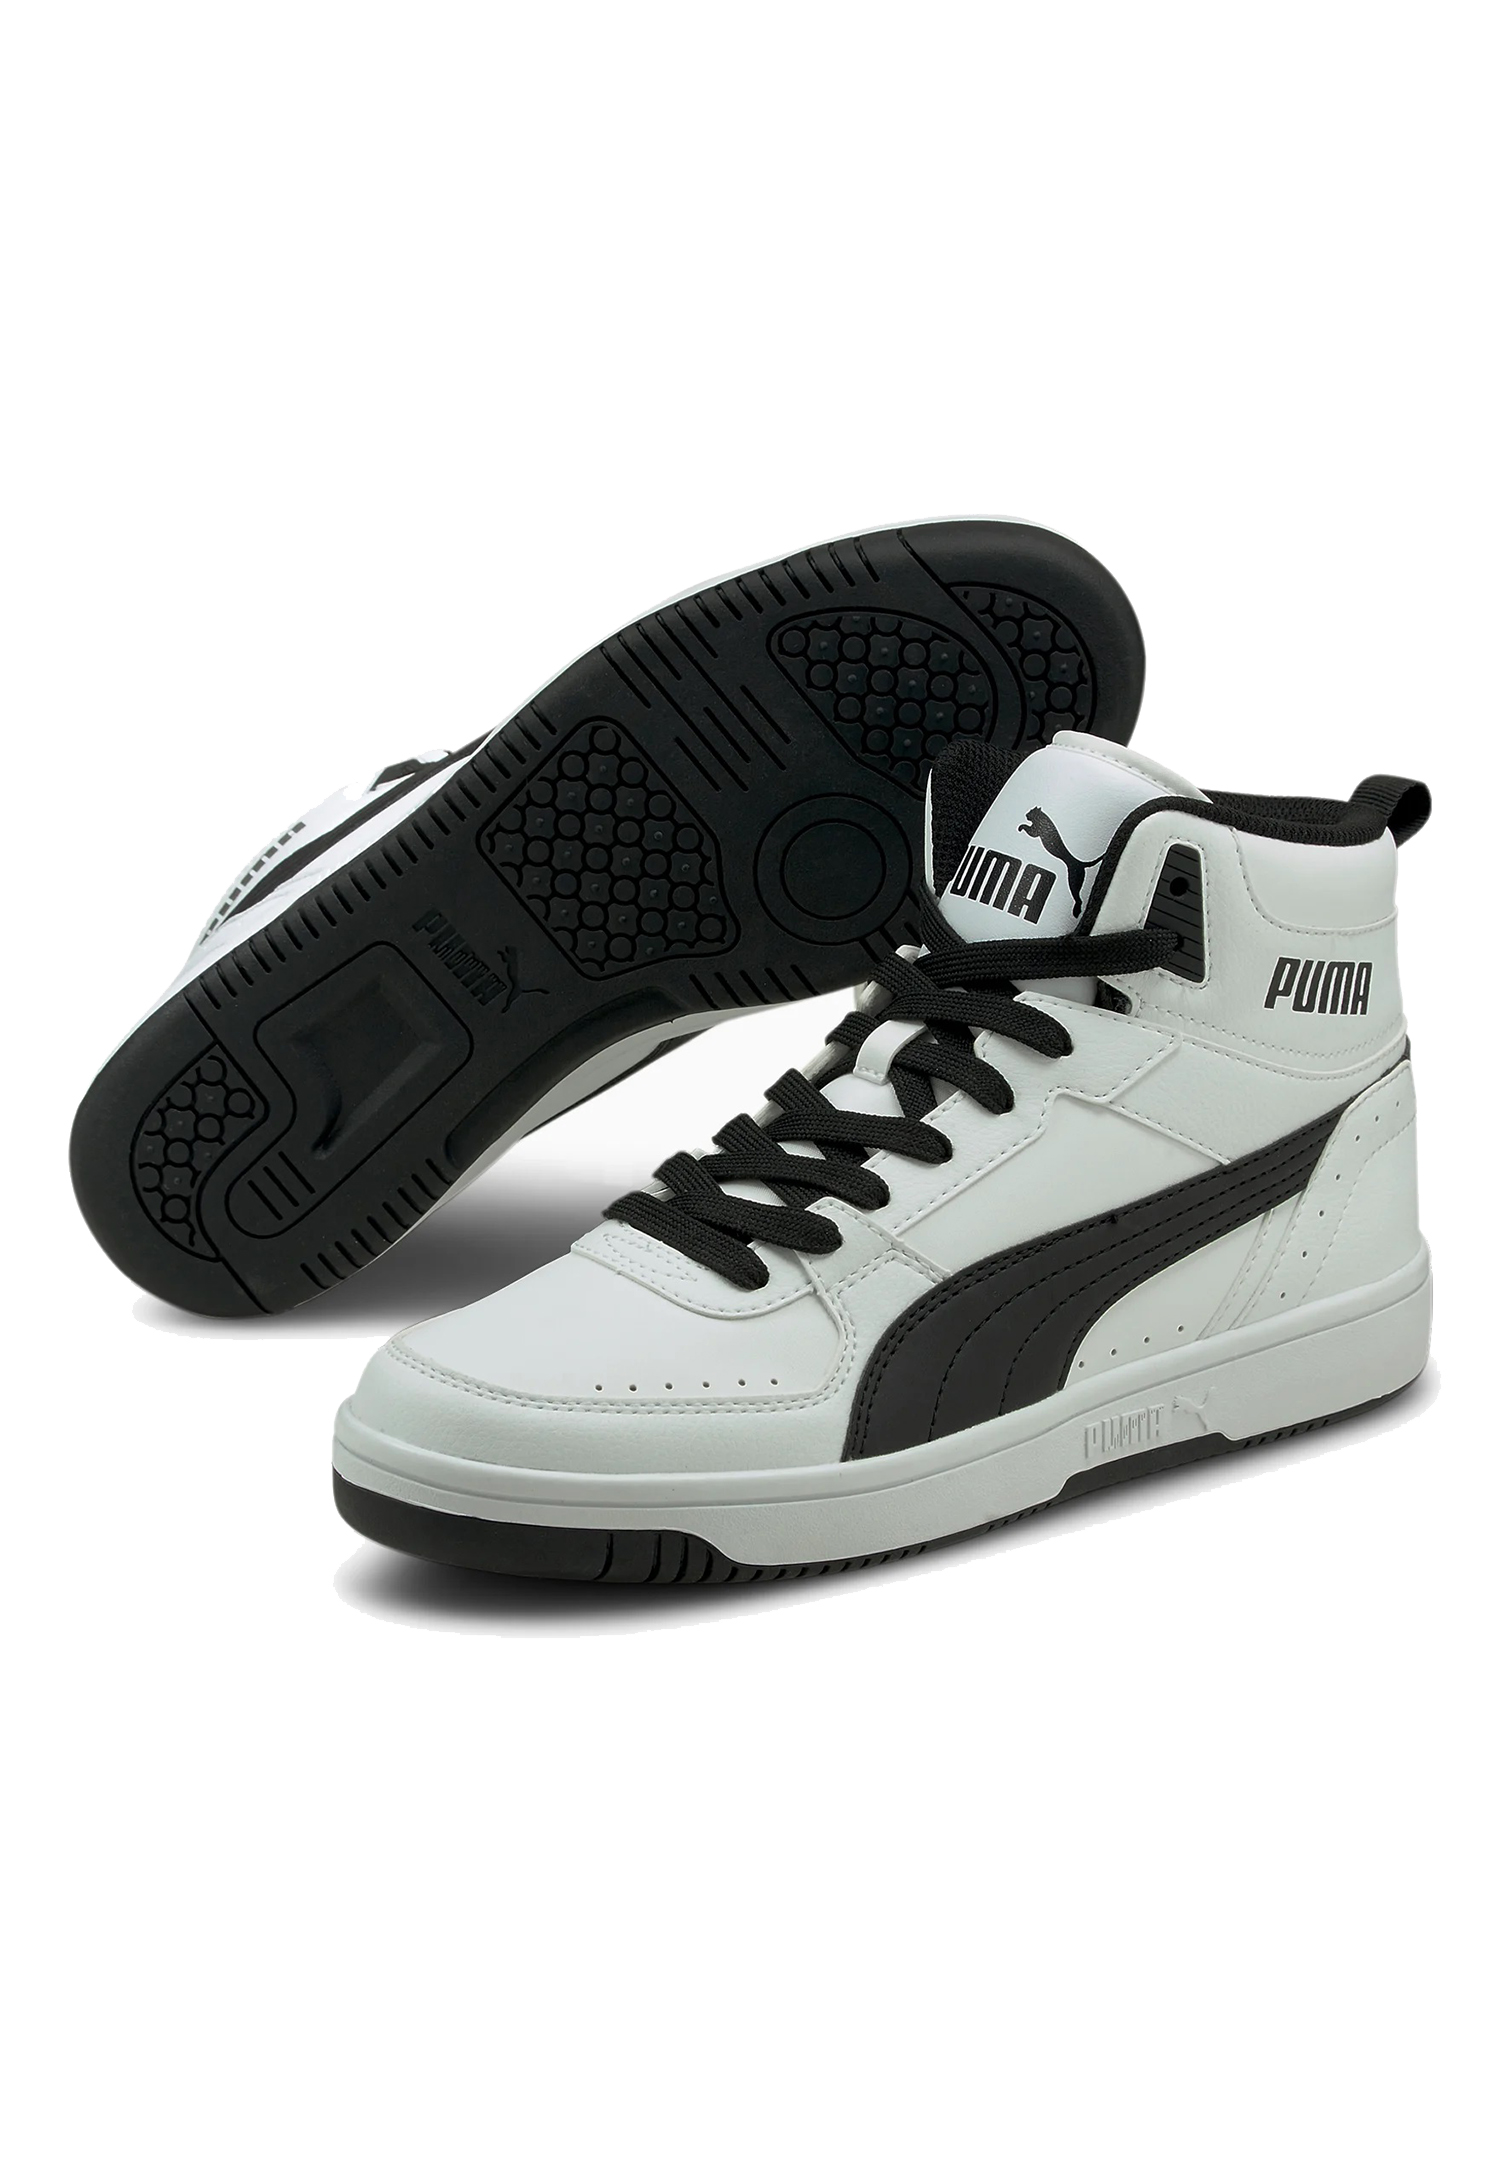 Puma Rebound JOY High Top Herren Sneaker Sportschuh 374765 weiss schwarz